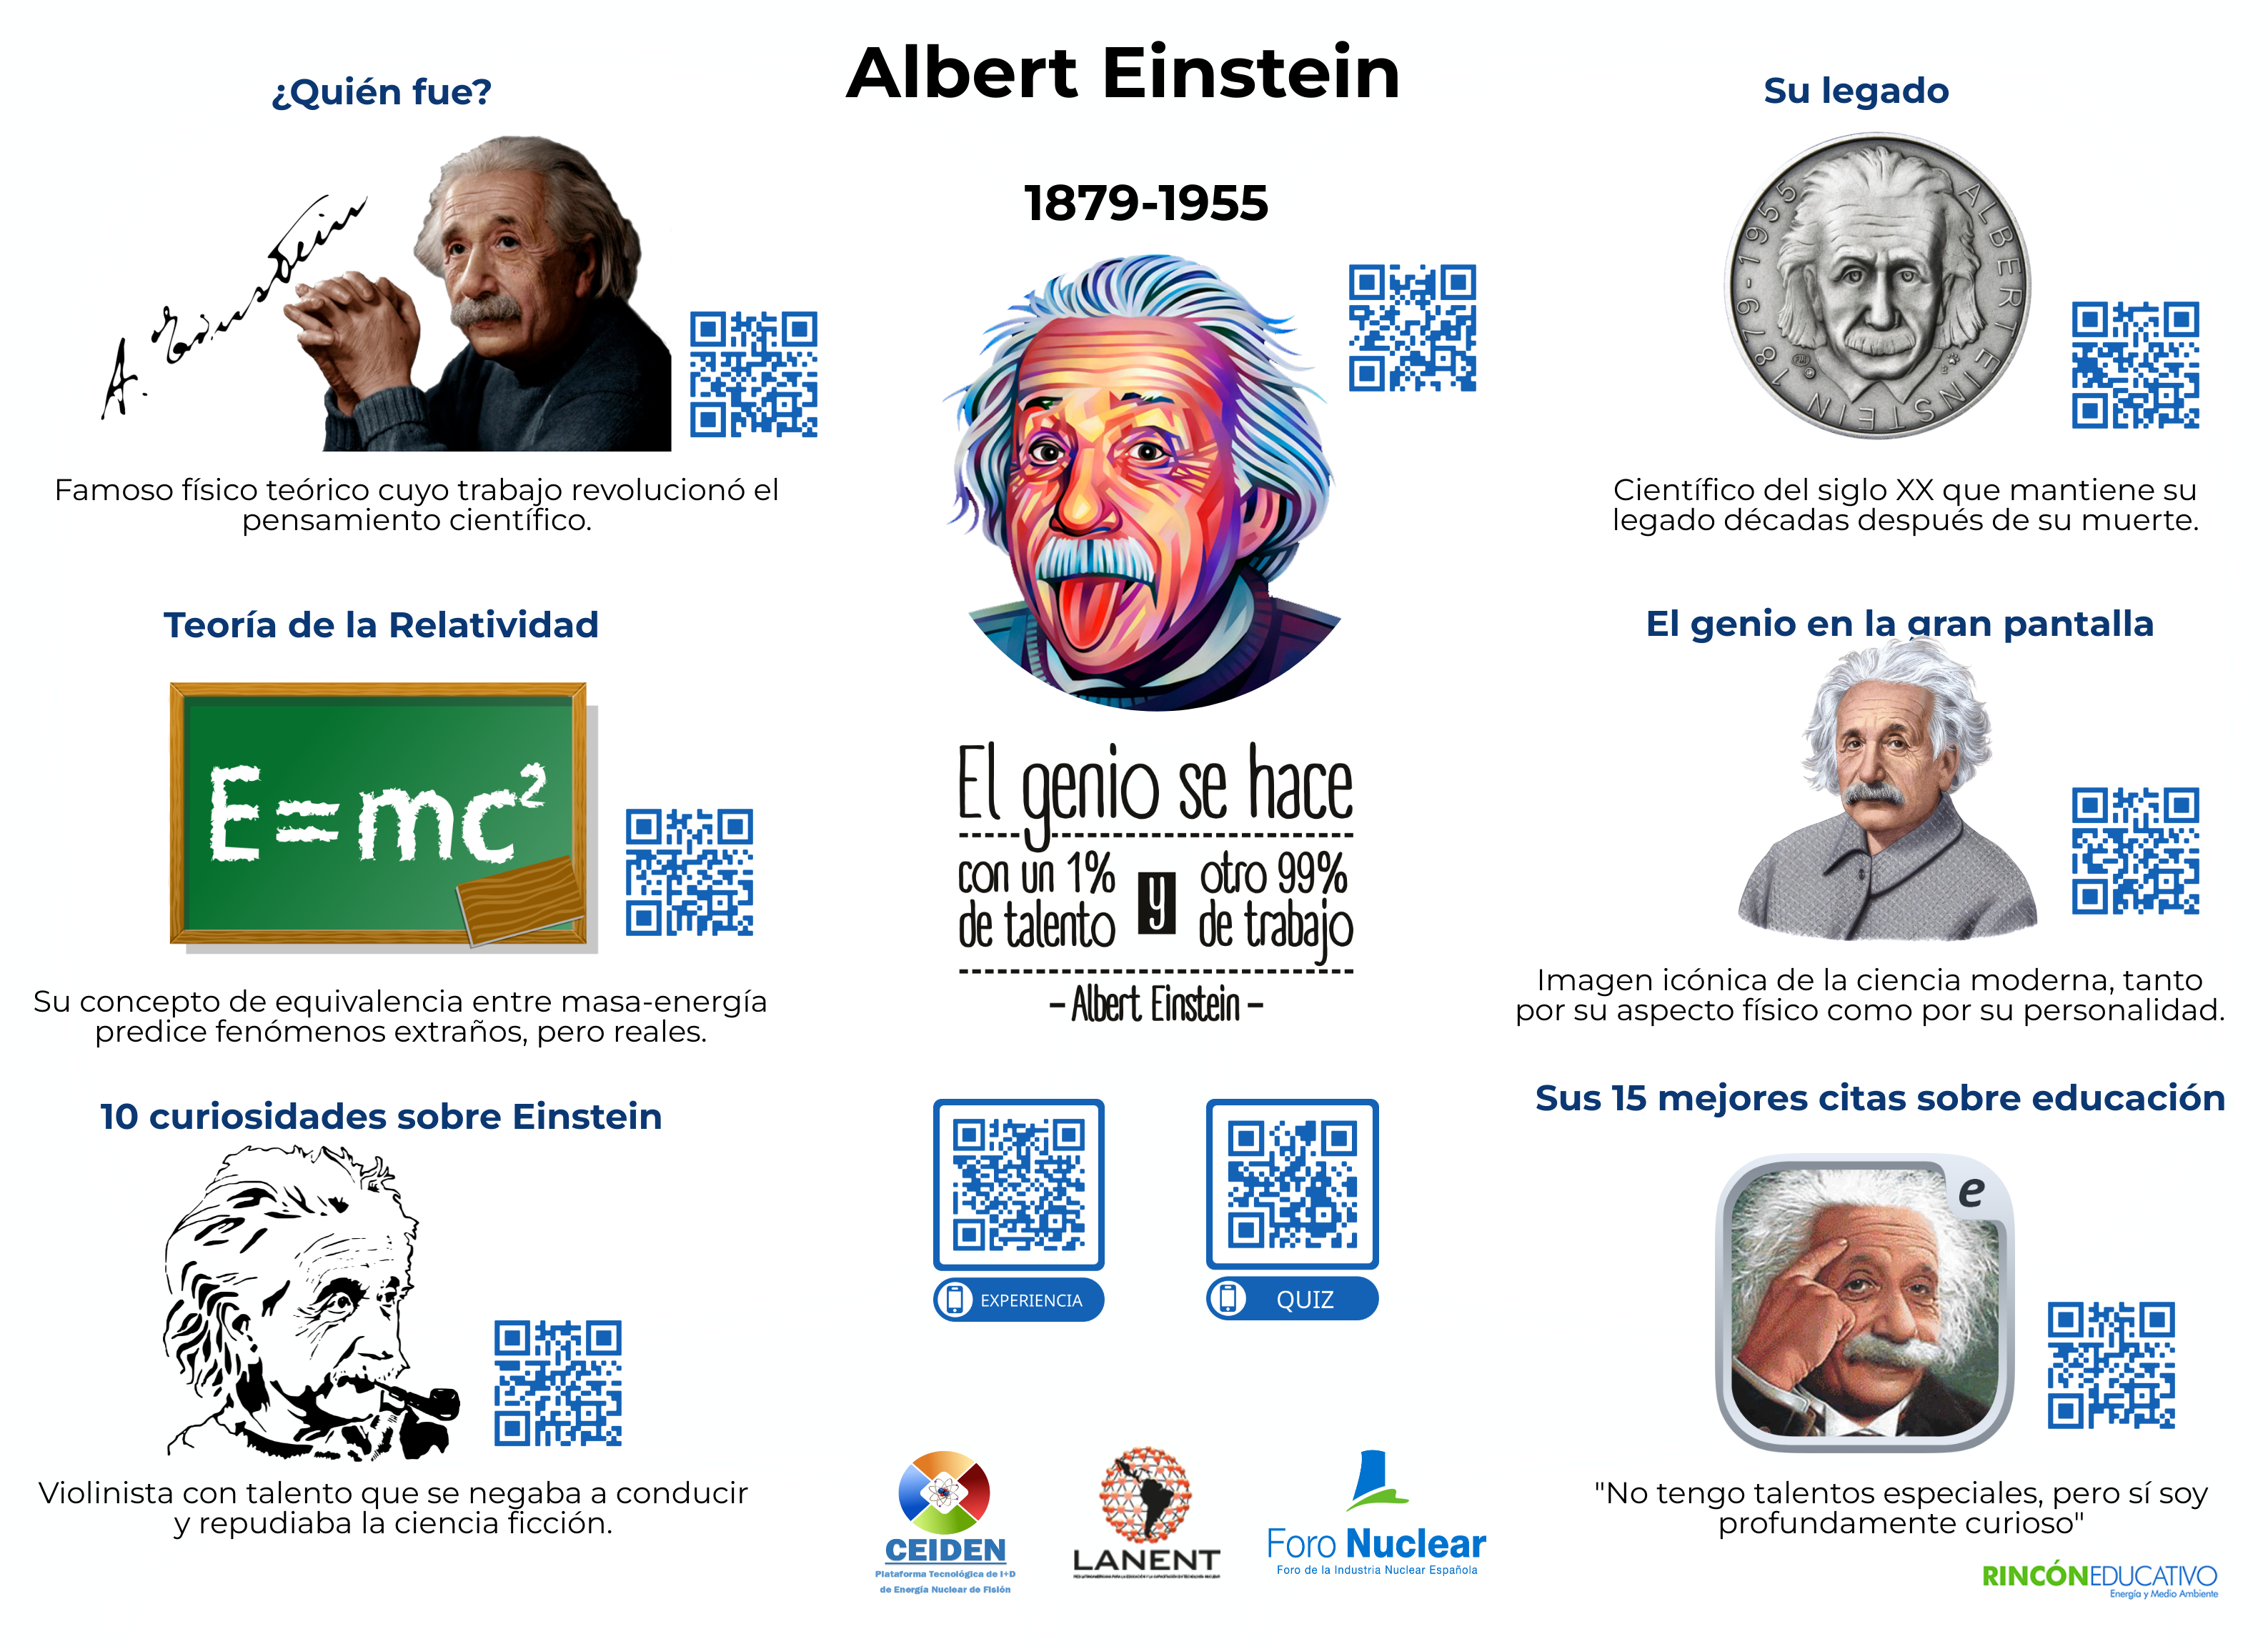 Lámina interactiva sobre Albert Einstein